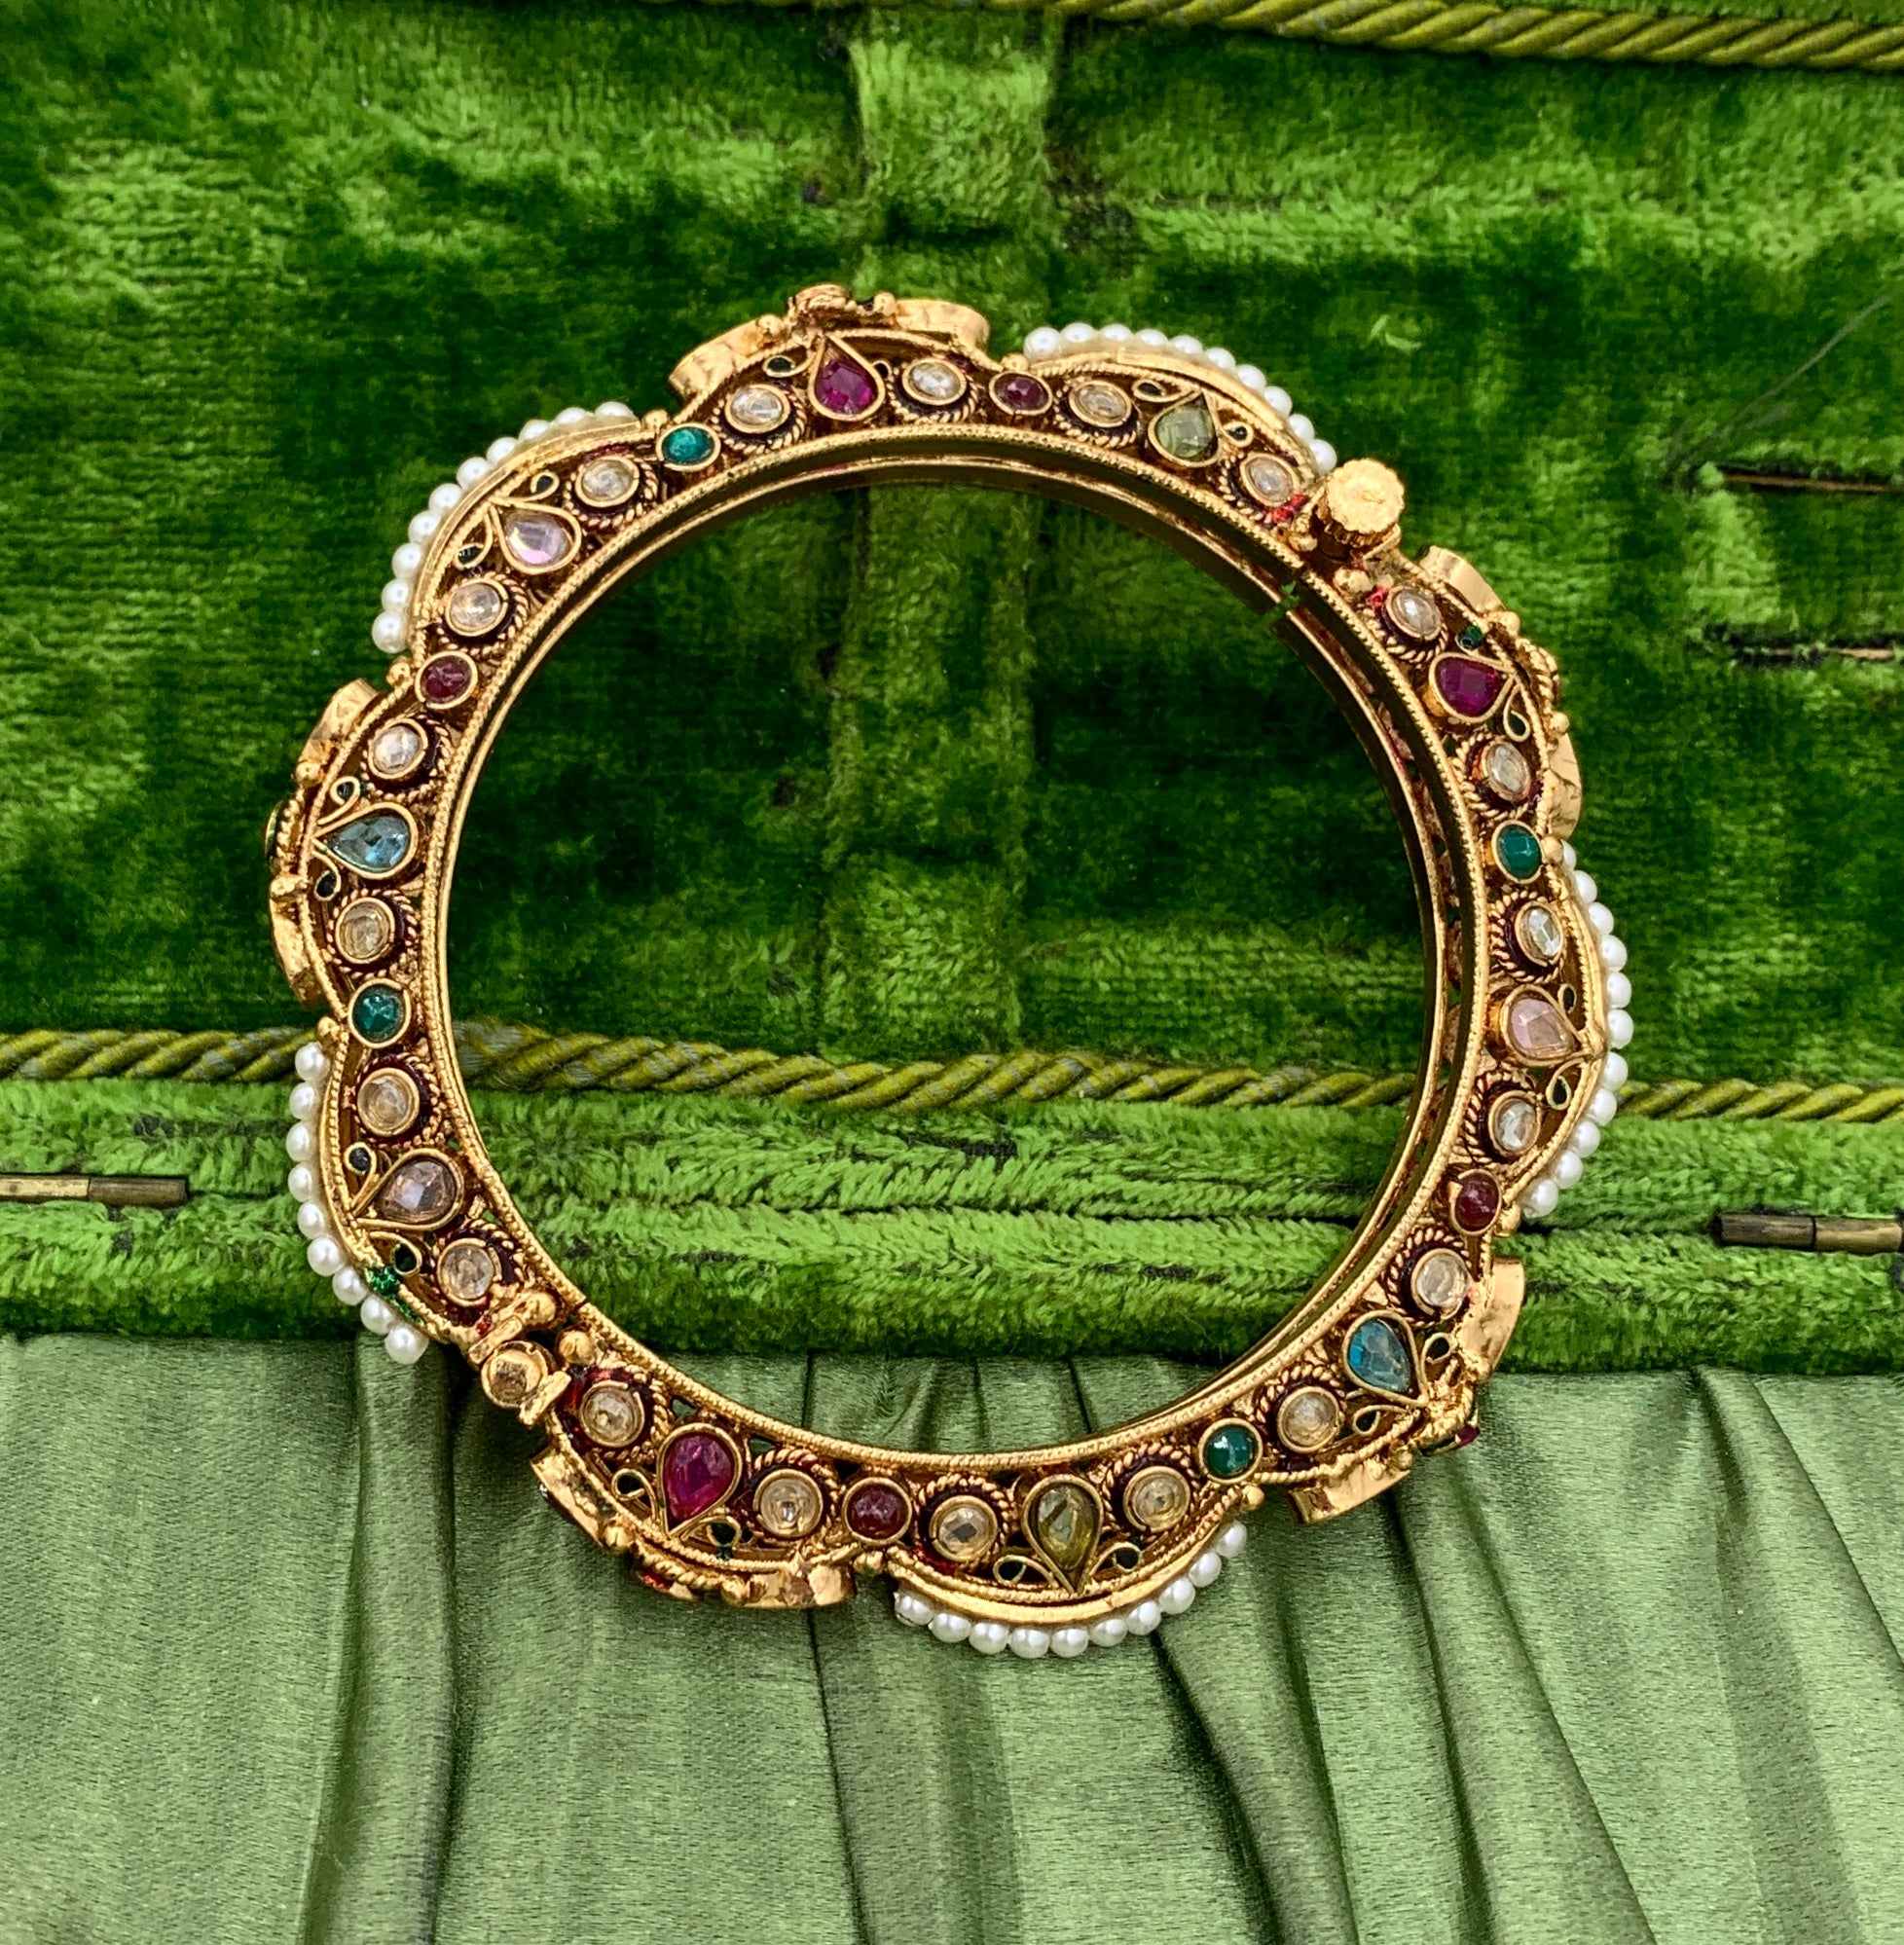 Ce magnifique By Design Jewelers indien ancien est orné de rubis, d'émeraudes, de péridots, de topazes et de perles, dans un style classique du Rajasthan moghol.  Le bracelet est doré à l'or fin 10 carats.  C'est tout simplement exquis.  Le bijou